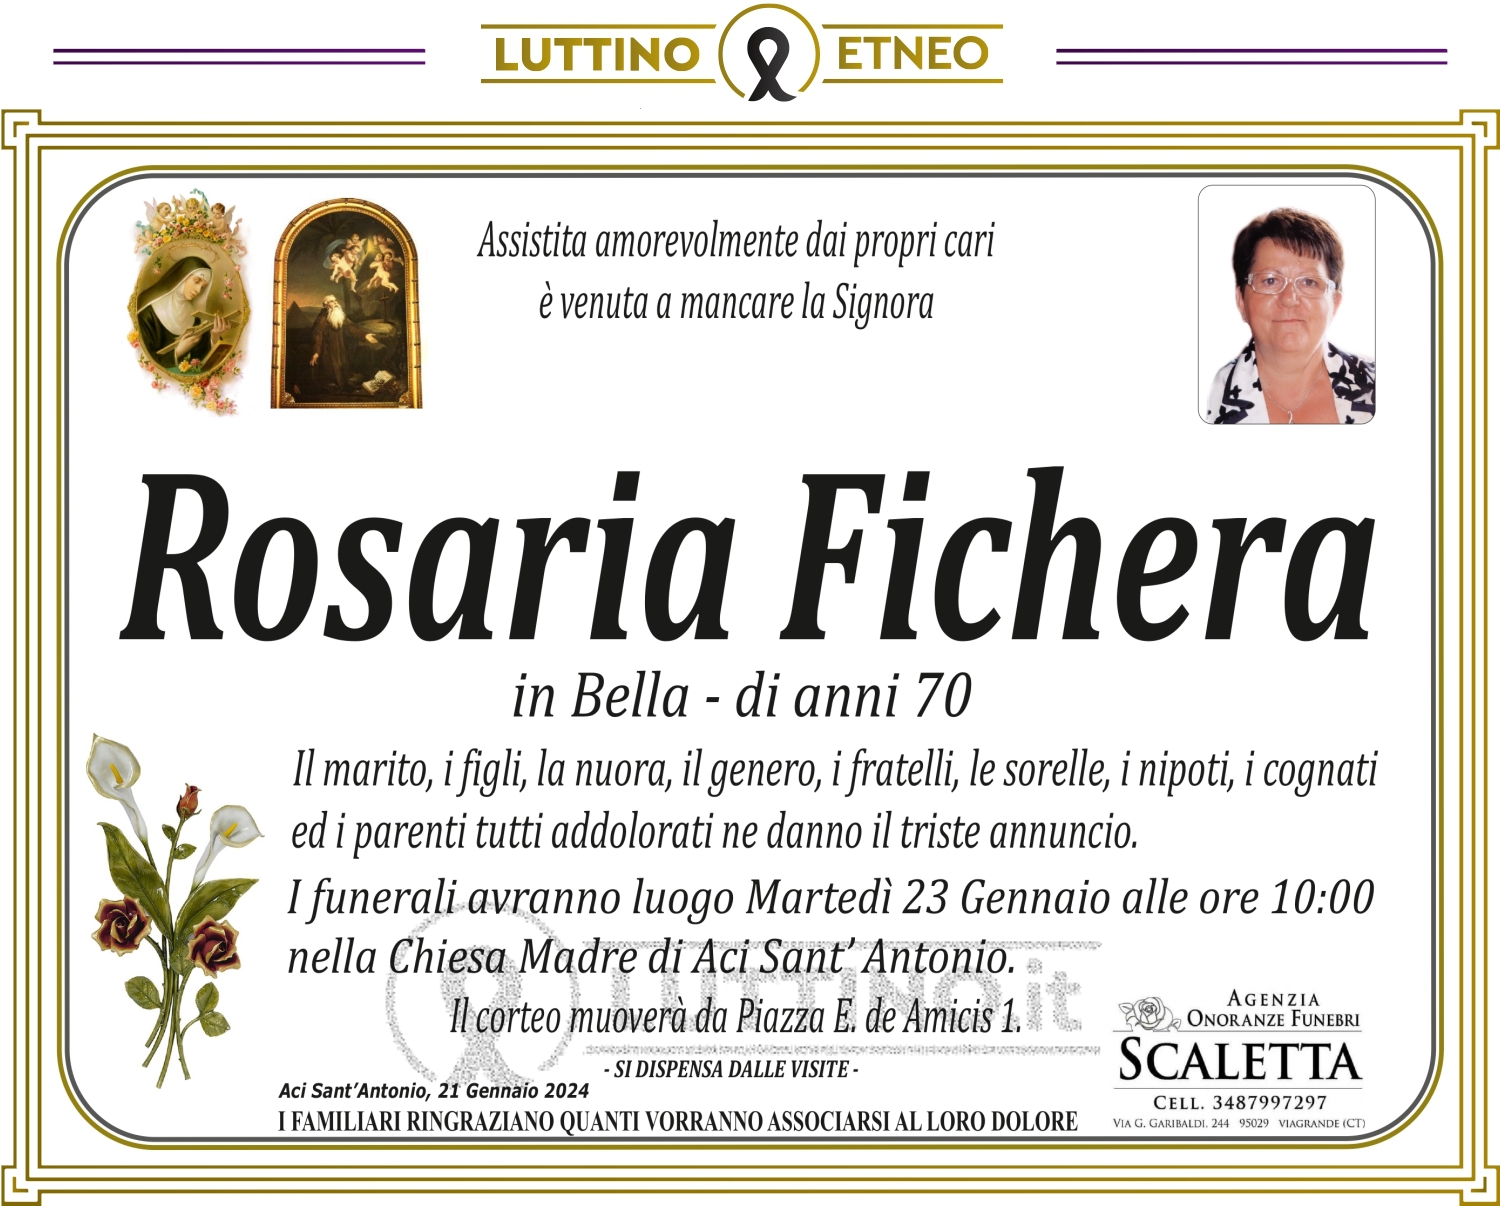 Rosaria Fichera